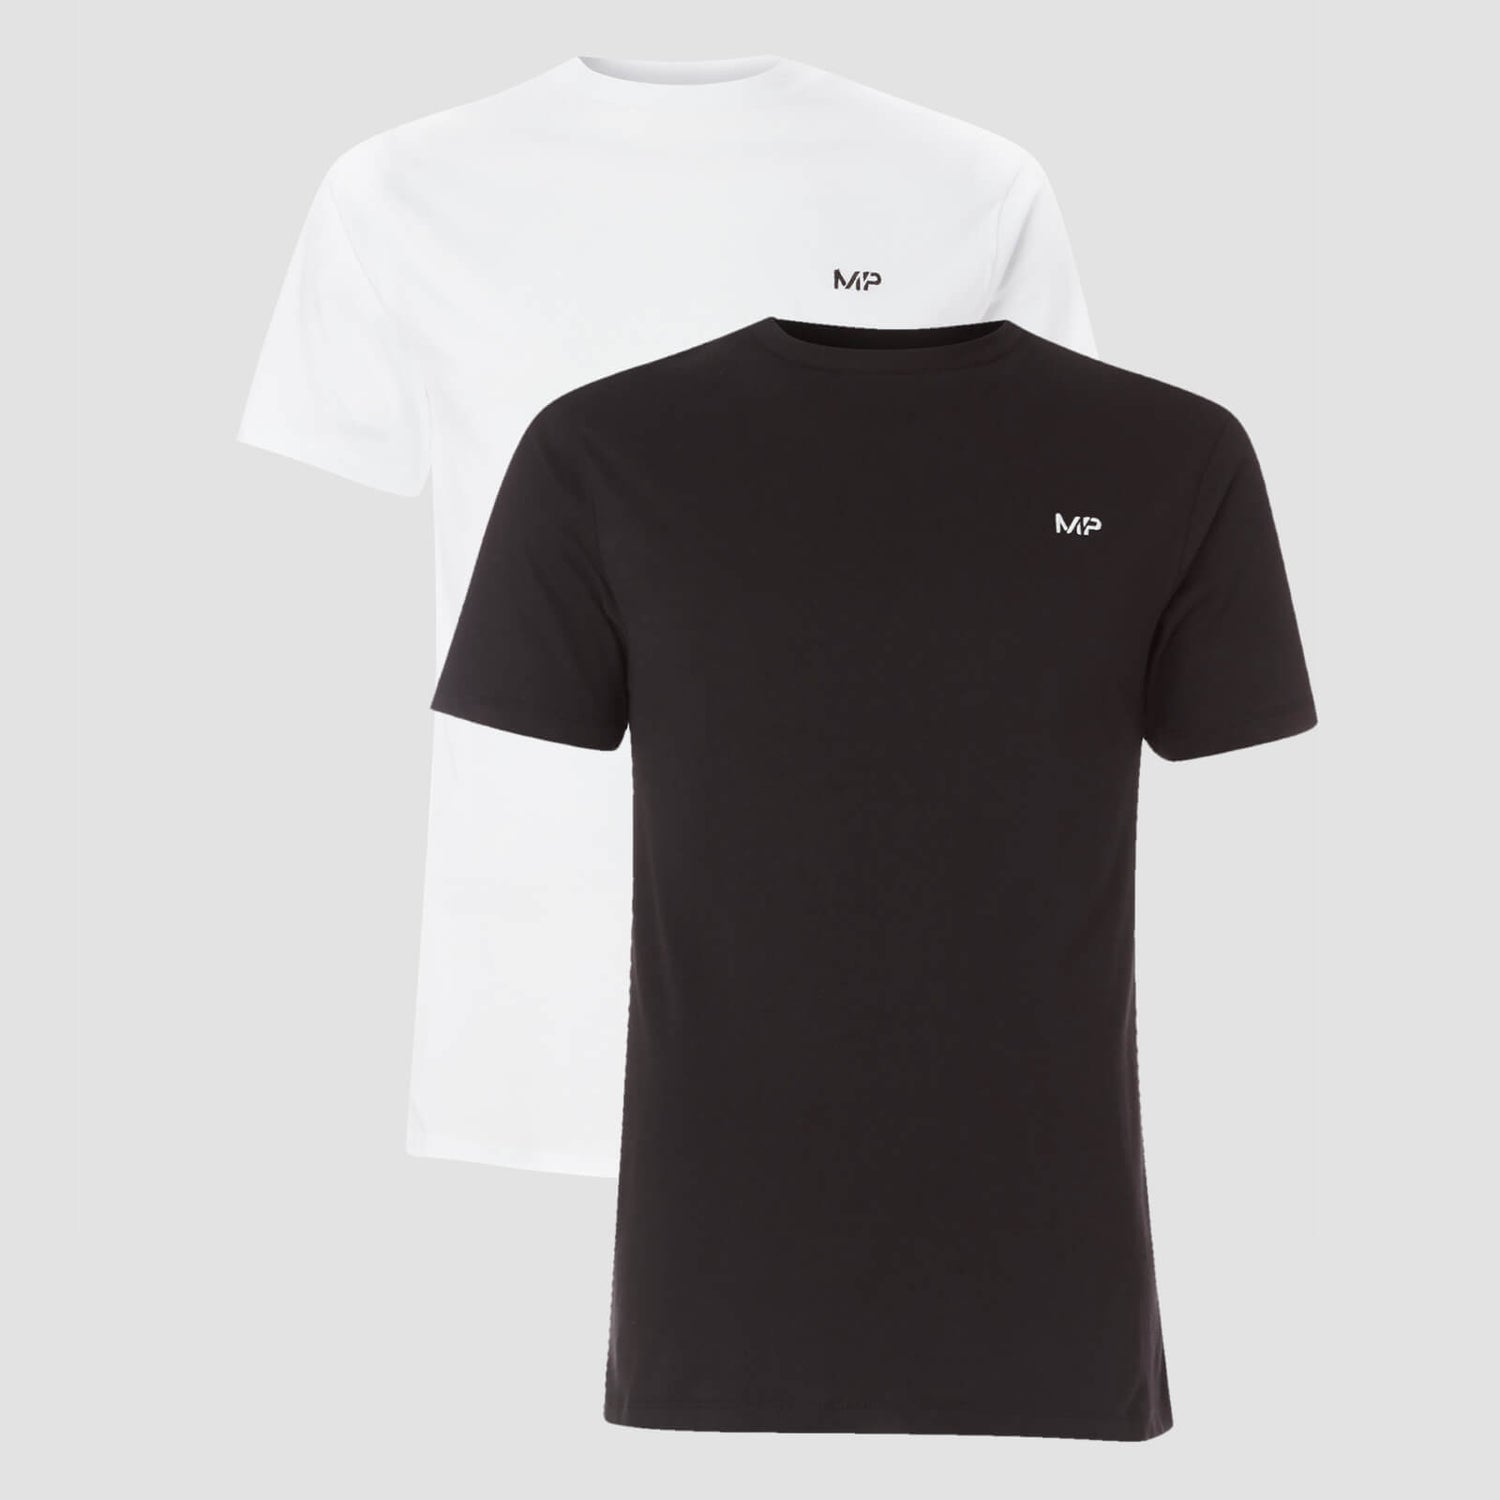 남성용 에센셜 티셔츠 - 블랙/화이트 (2팩) - S